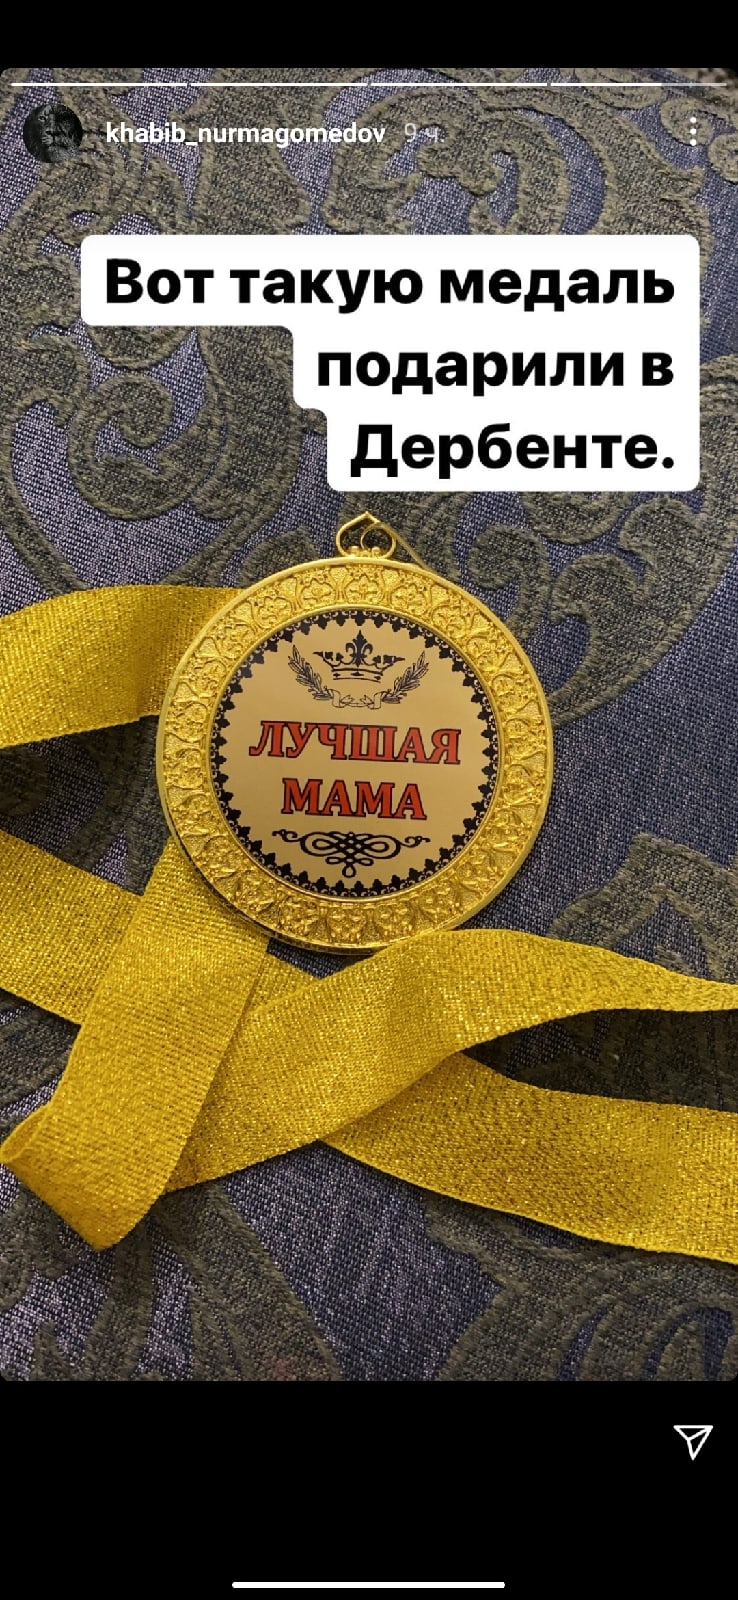 Нурмагомедову подарили медаль «Лучшая мама»